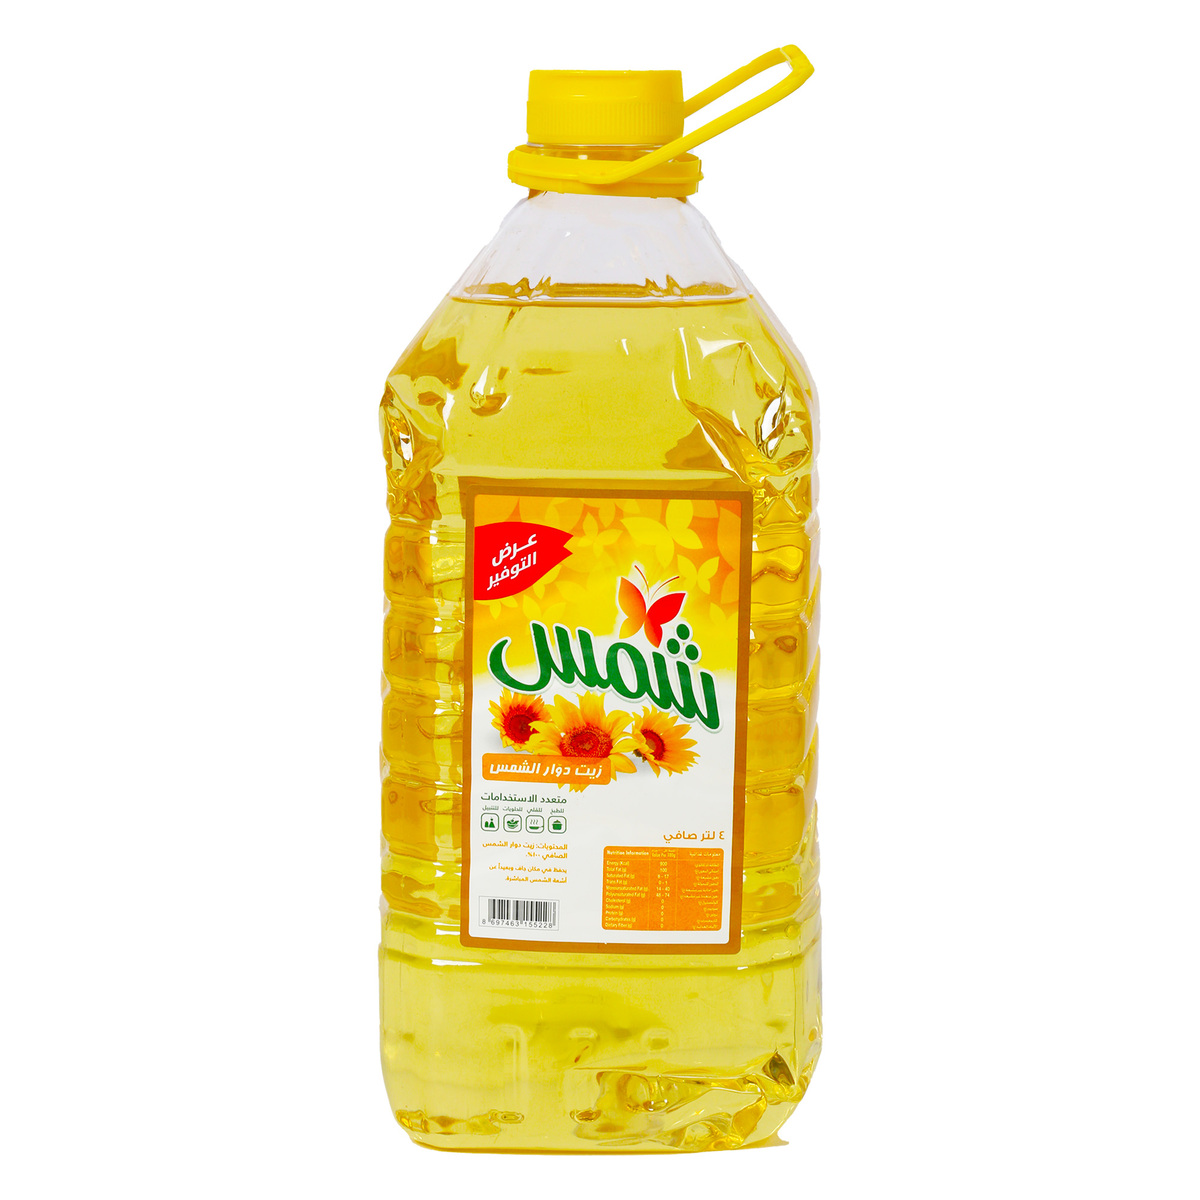 Shams Sunflower Oil 4 Litres